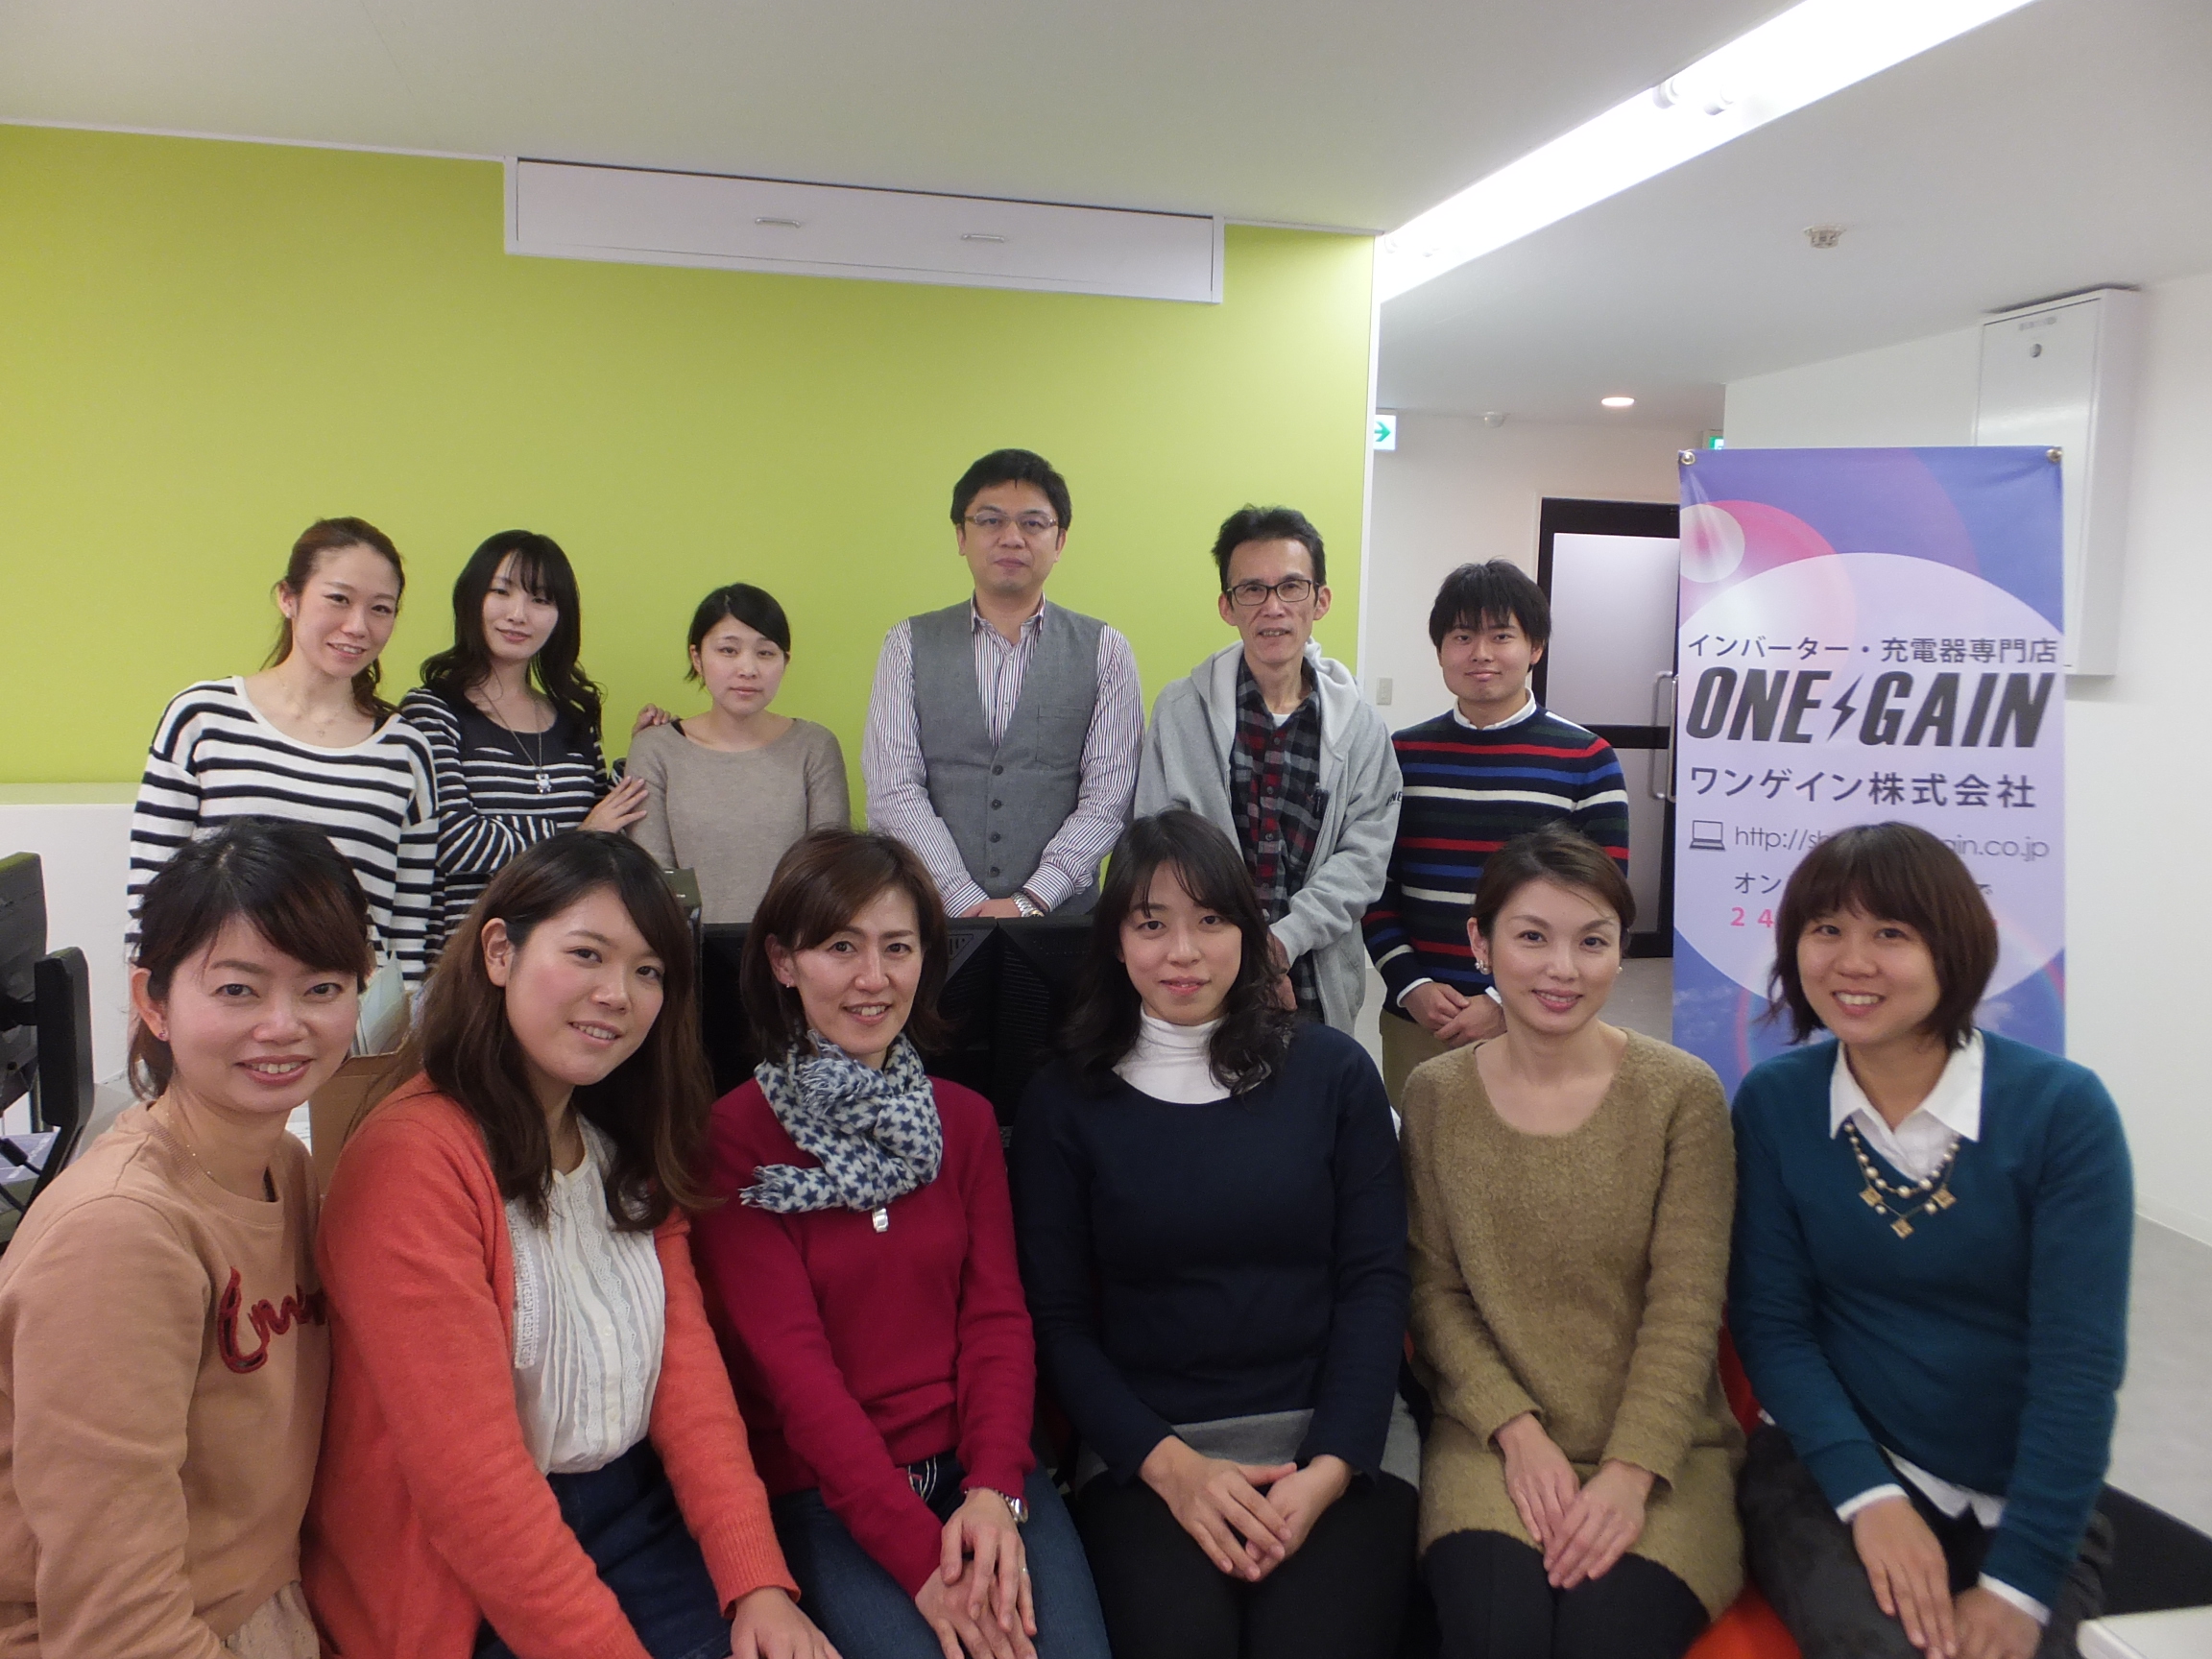 ワンゲイン株式会社の女性支援 社内風土作りについてのレポート 大阪市女性活躍促進情報発信事業